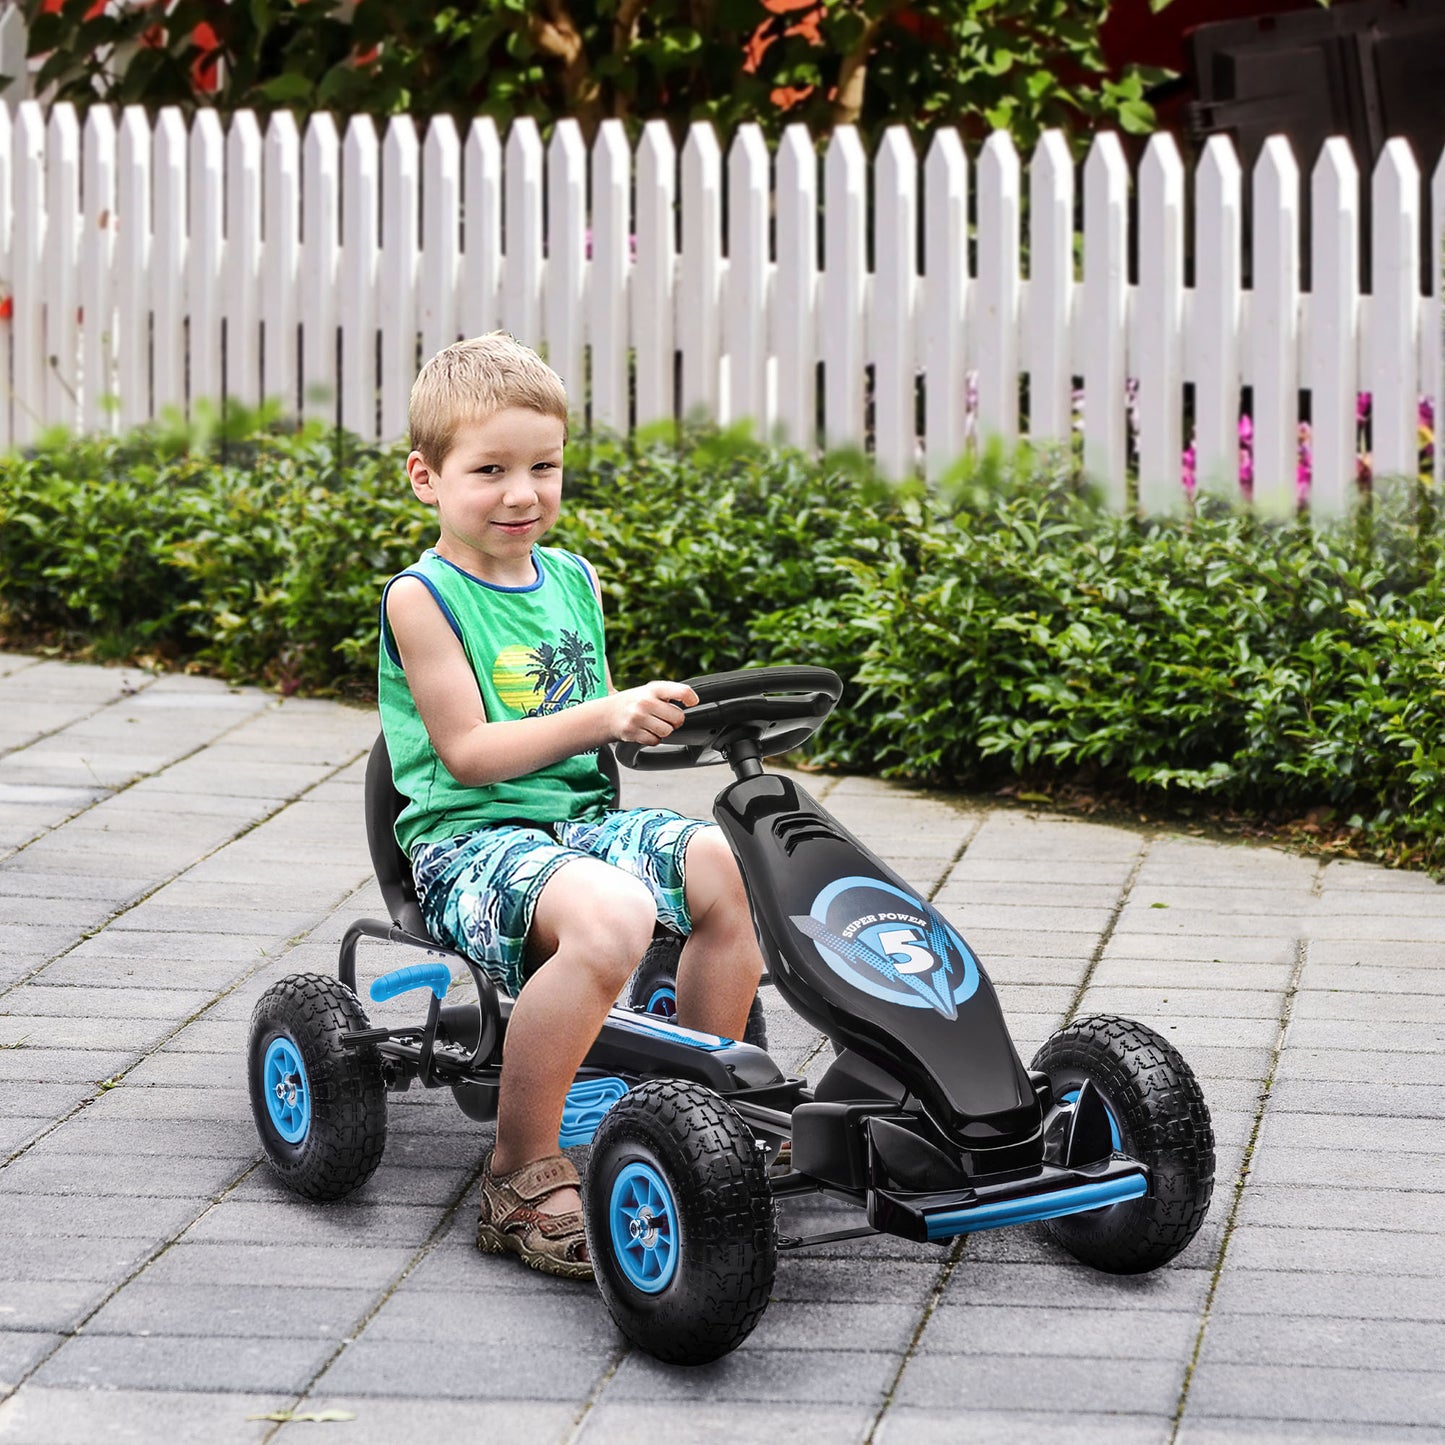 HOMCOM Go Kart a Pedales para Niños de 5-12 Años Coche de Pedales Infantil con Asiento Ajustable Neumáticos Inflables Amortiguador y Freno de Mano Carga 50 kg 121x58x61 cm Azul